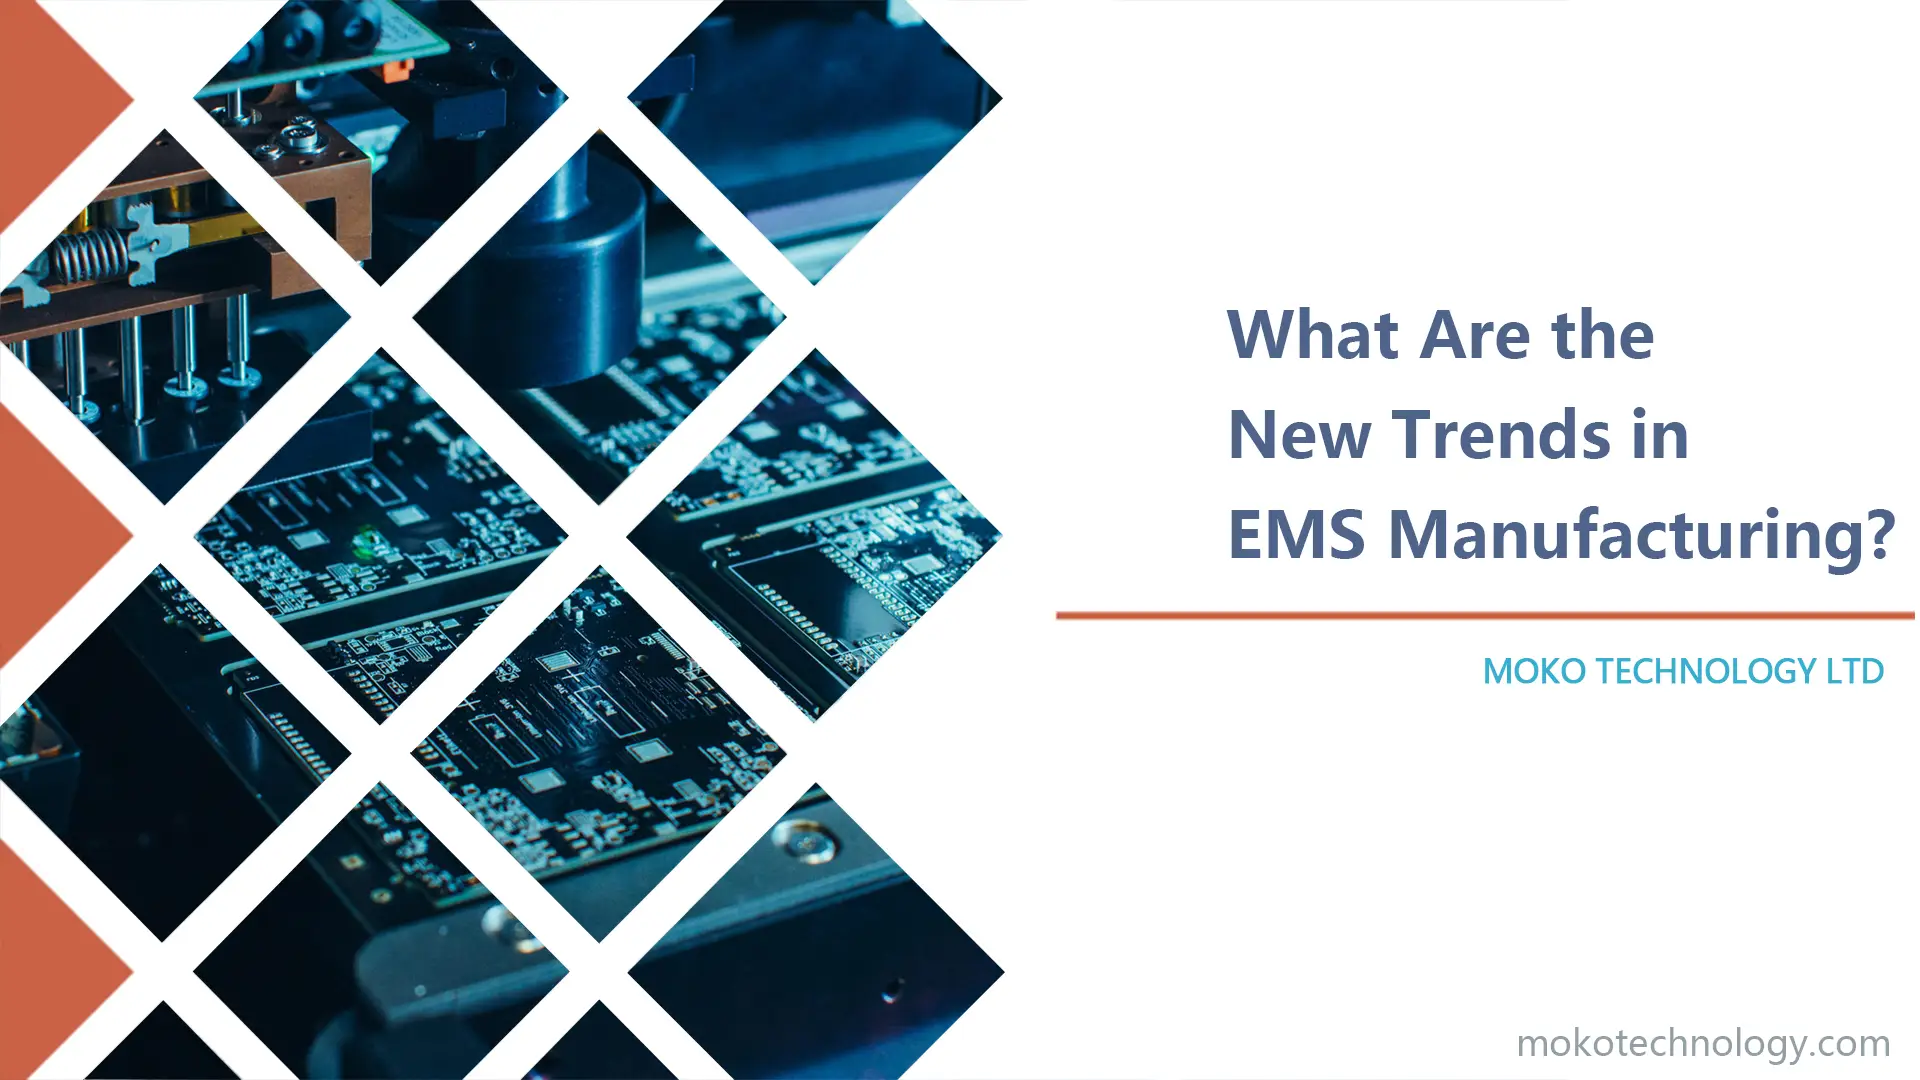 Quali sono le nuove tendenze nella produzione di EMS